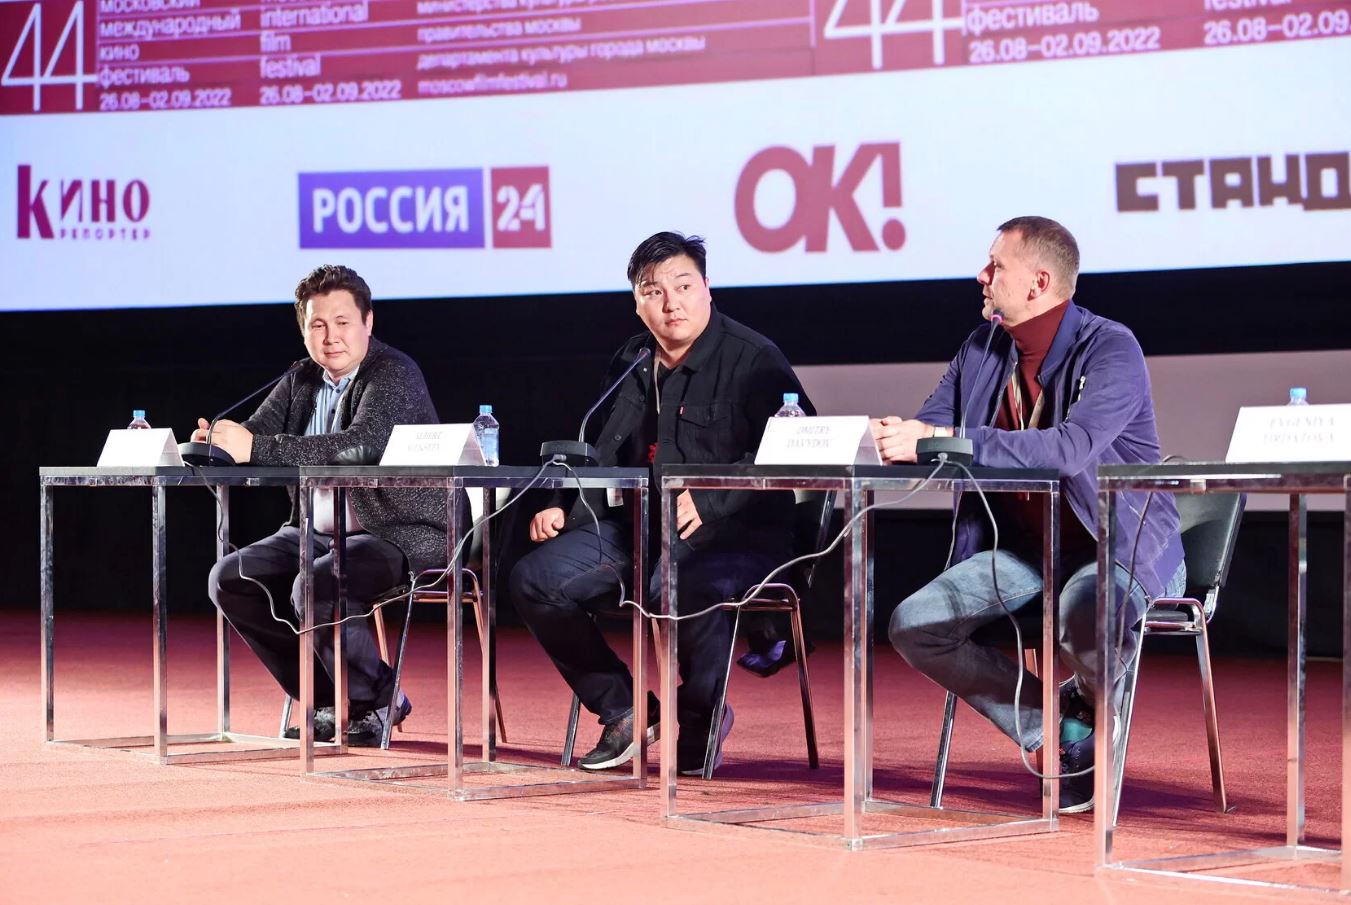 Якутский фильм «Молодость» покажут на Московском международном кинофестивале 1 сентября